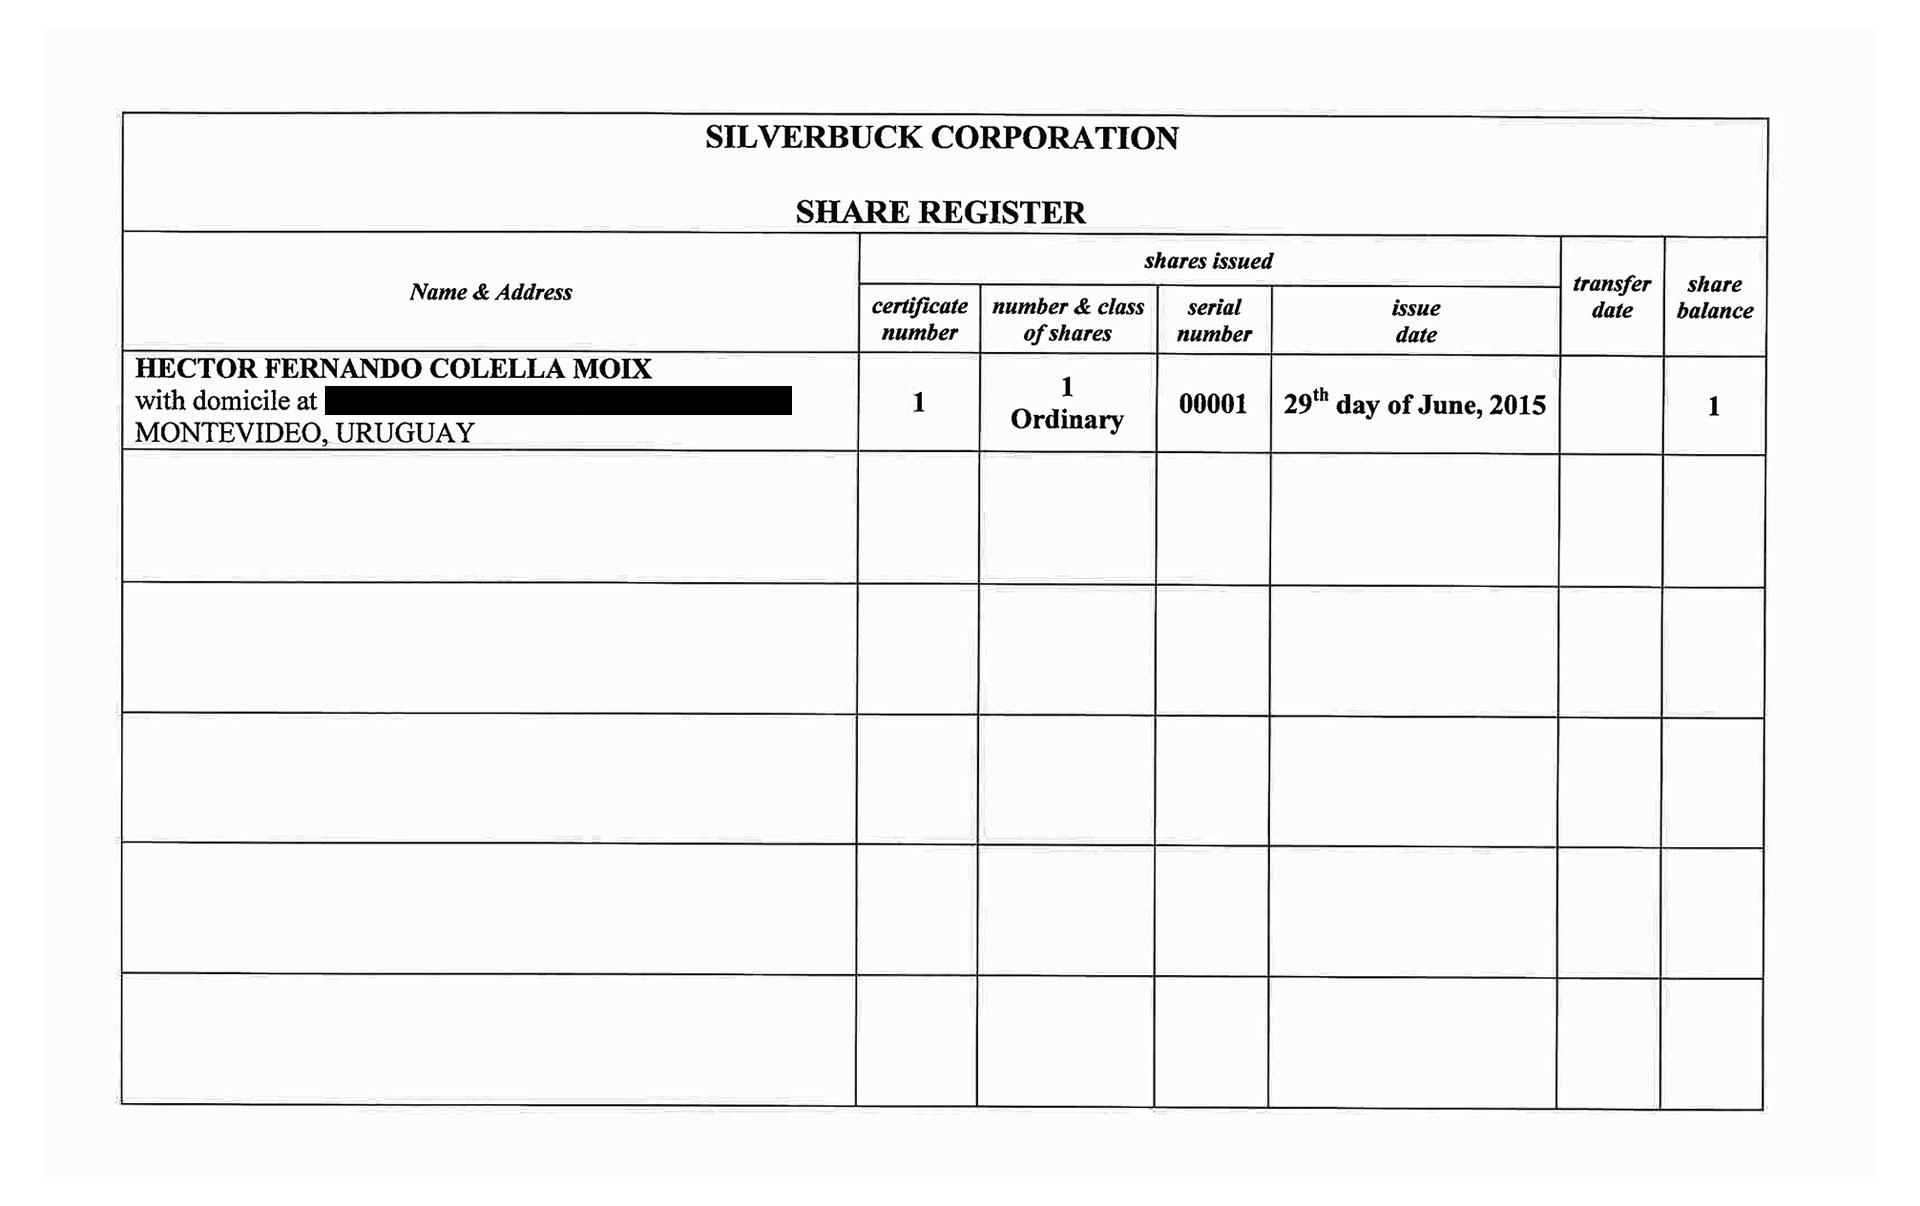 Registro de acciones de Silverbuck Corp en favor de Colella.